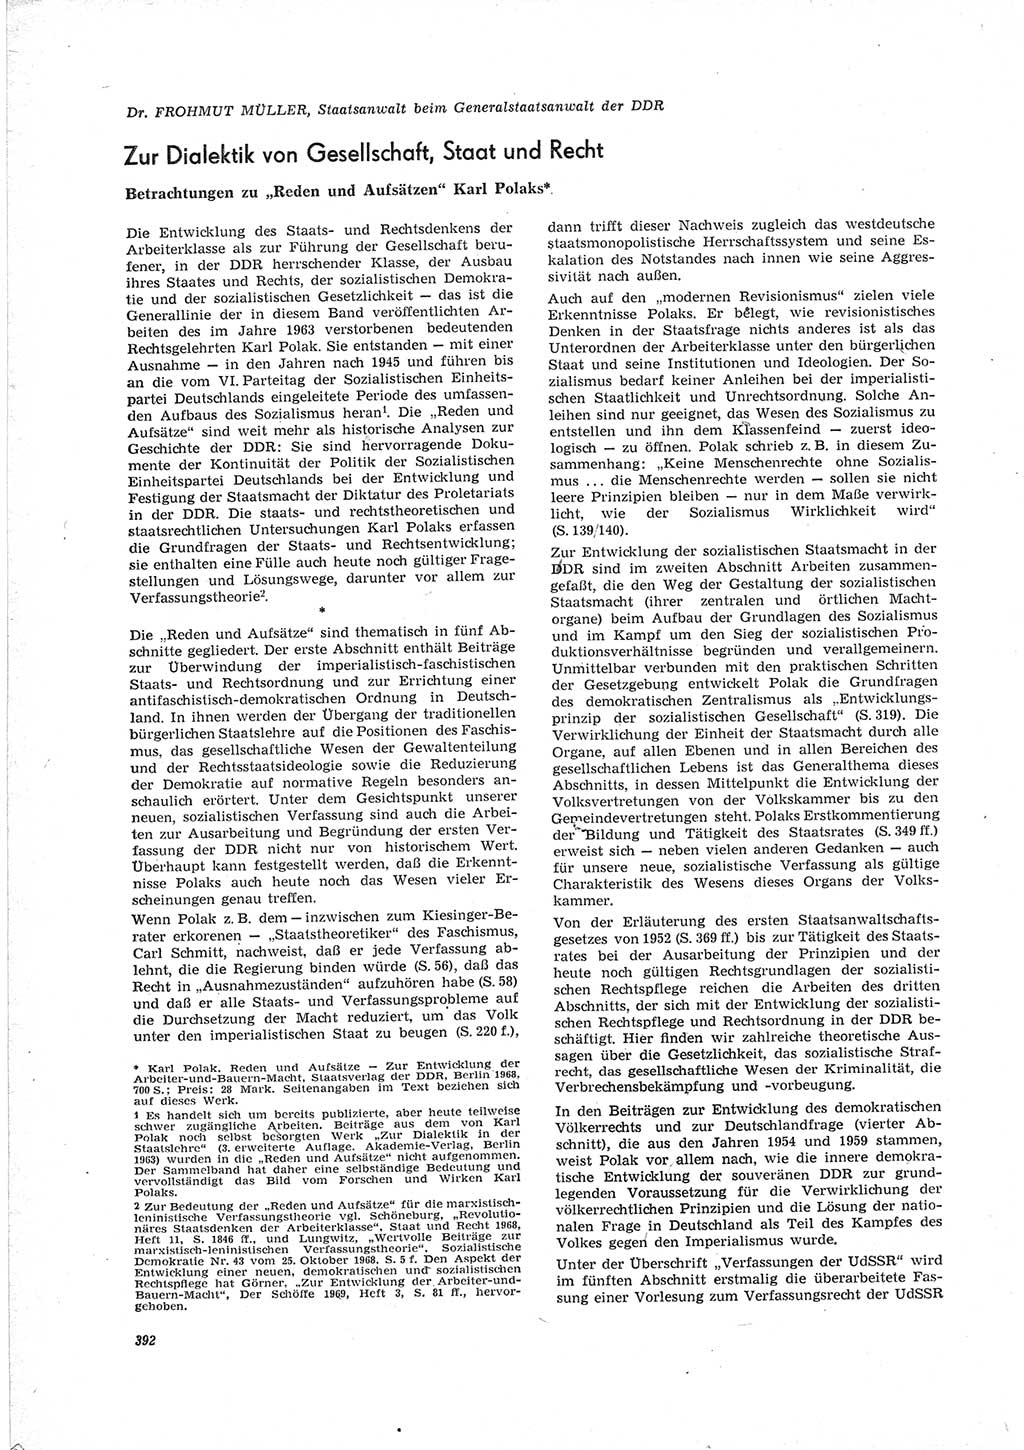 Neue Justiz (NJ), Zeitschrift für Recht und Rechtswissenschaft [Deutsche Demokratische Republik (DDR)], 23. Jahrgang 1969, Seite 392 (NJ DDR 1969, S. 392)